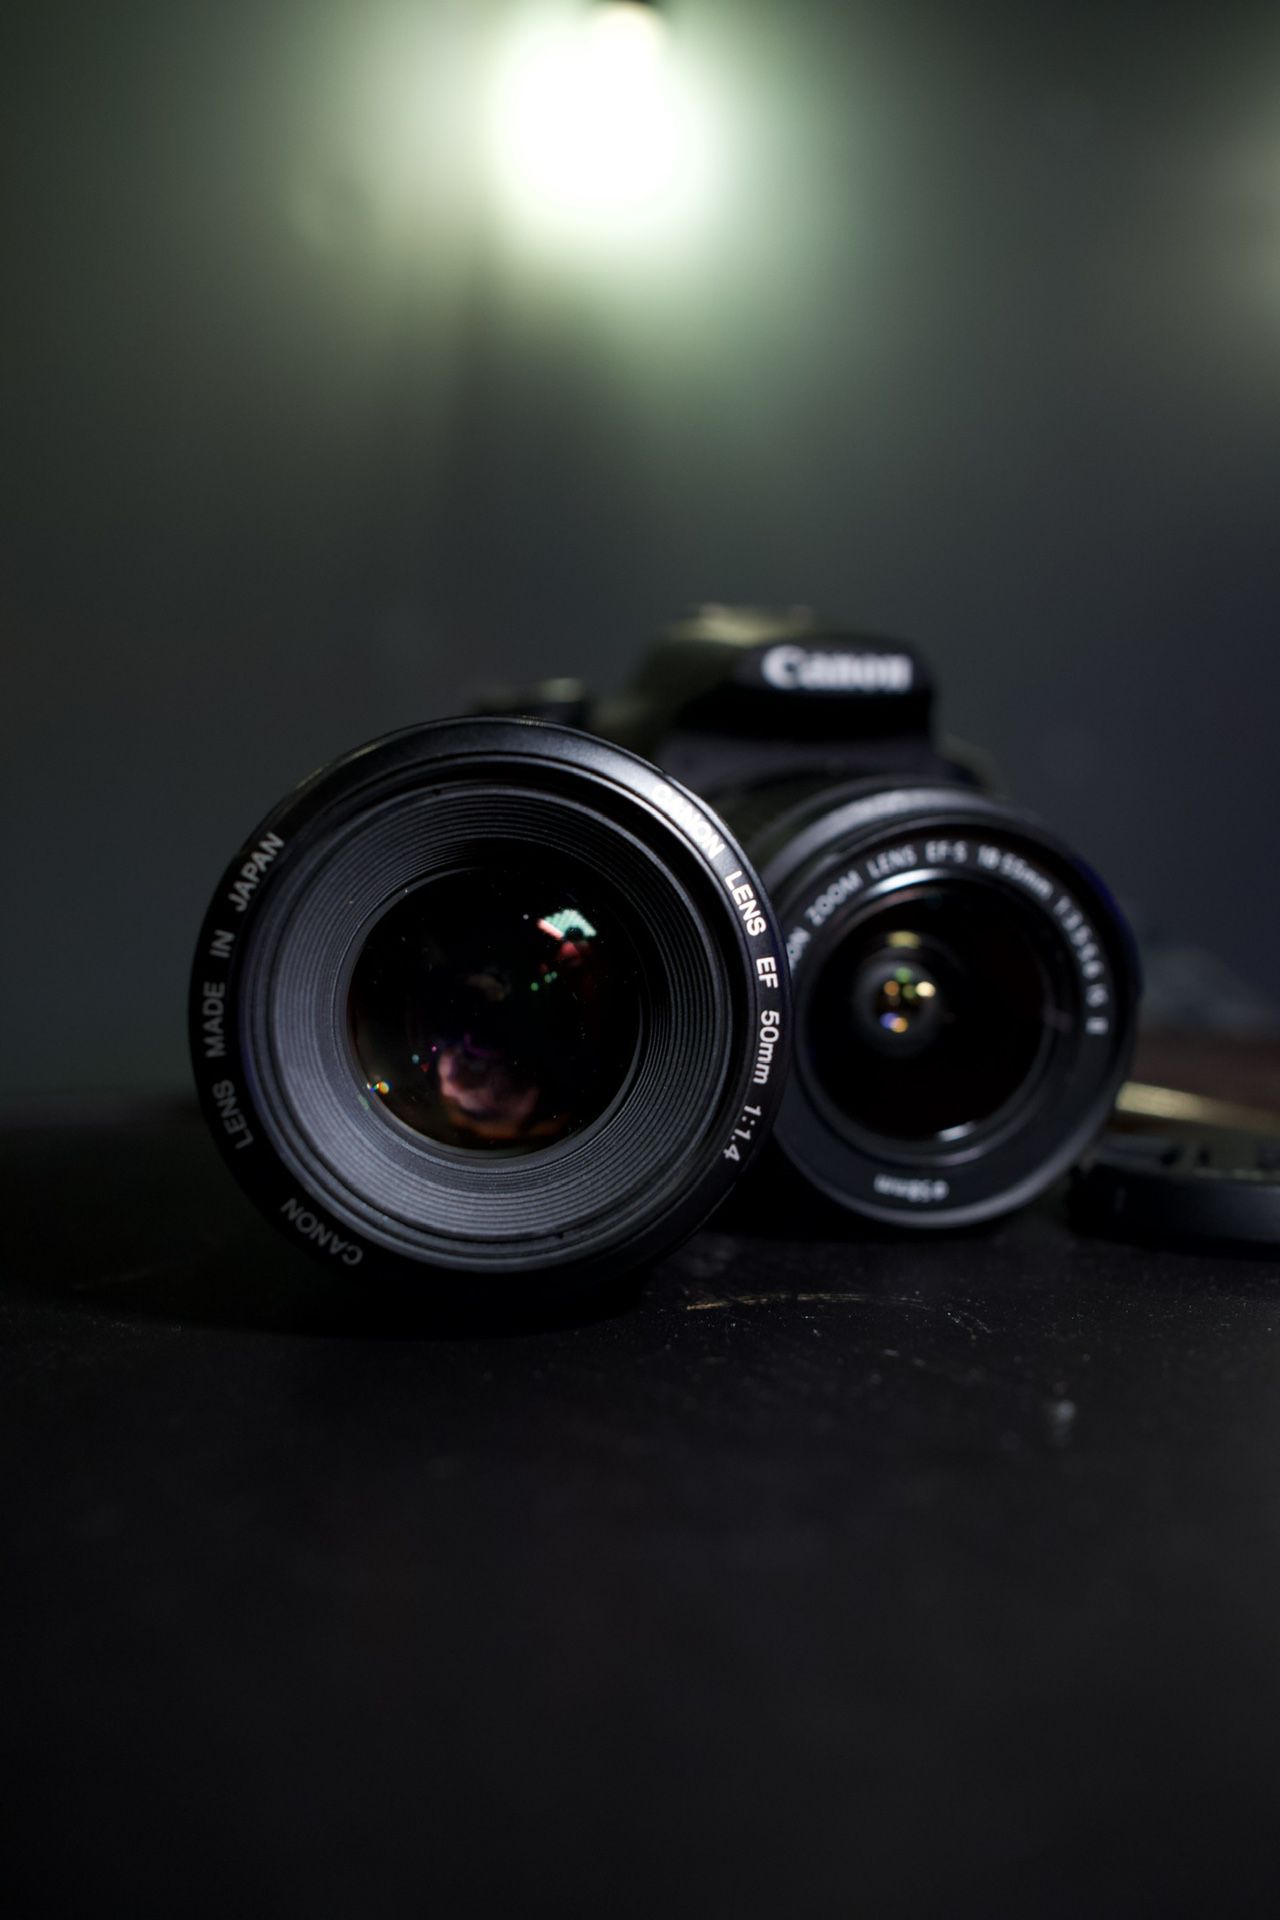 Canon 50mm F1.4 Ultrasonic Motor Lens